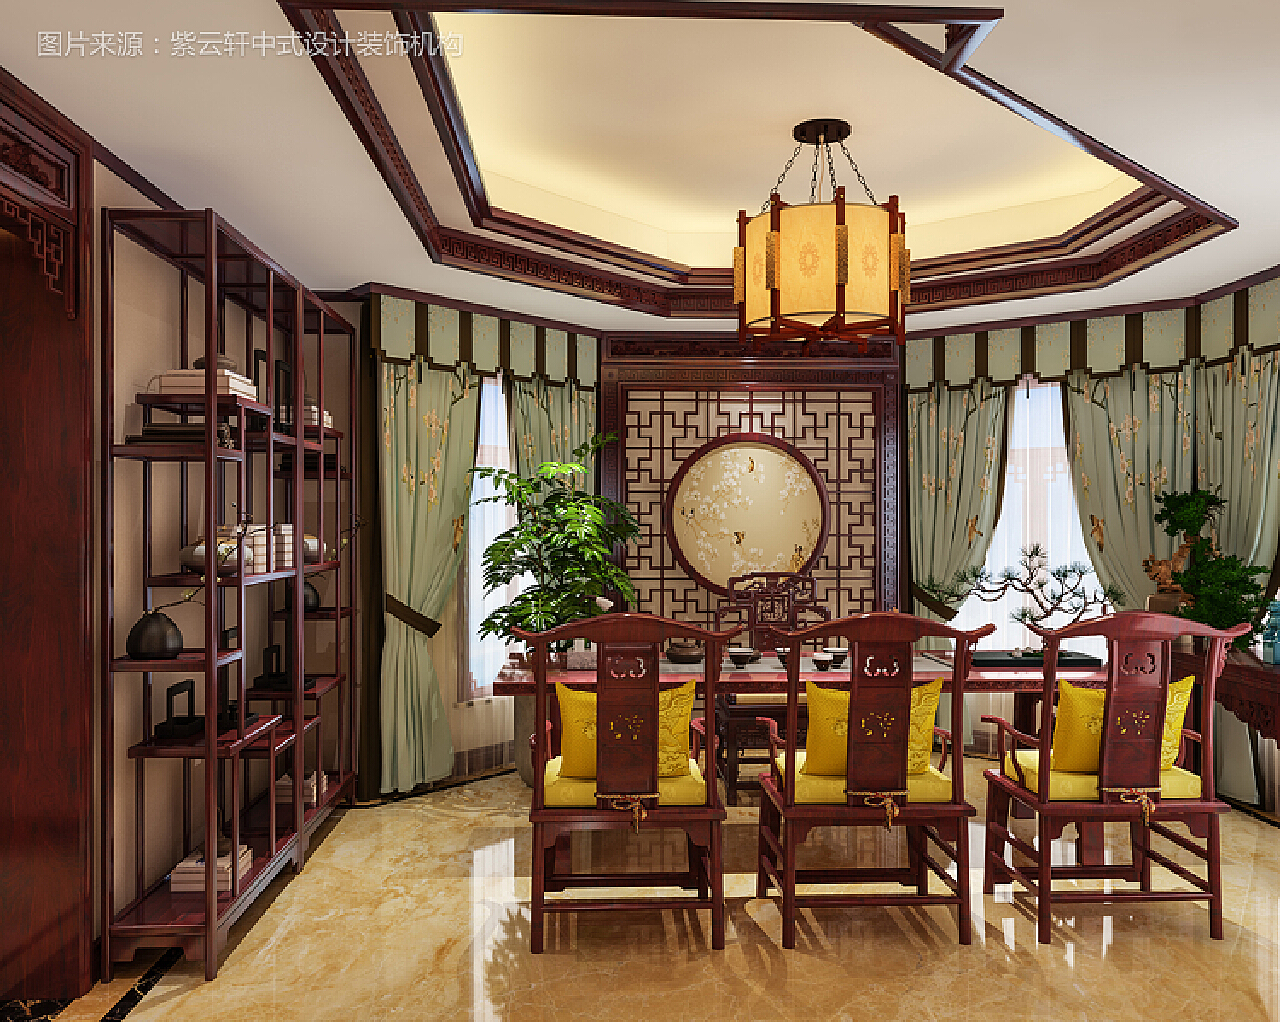 古典中式装修风格 客厅实景图欣赏_紫云轩中式设计装饰机构